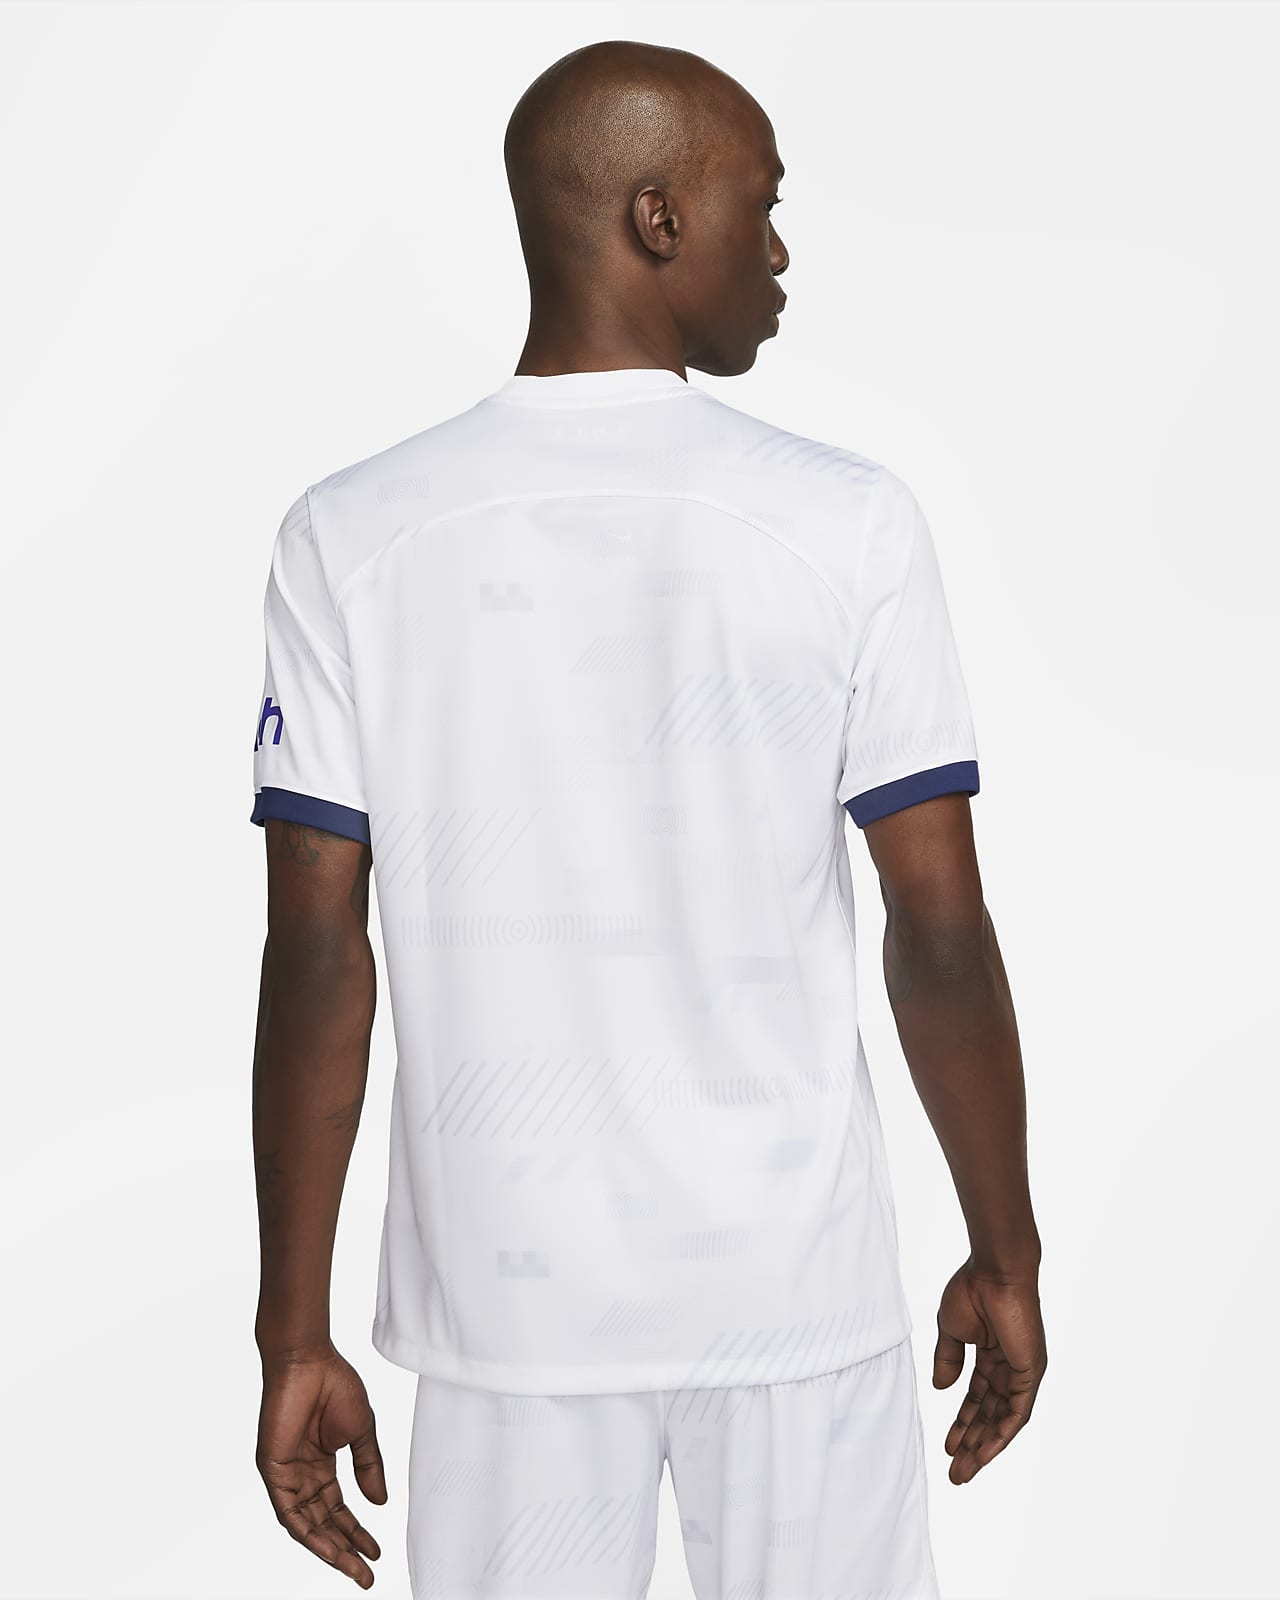 Nike football shirt Tottenham Hotspur 2018/19